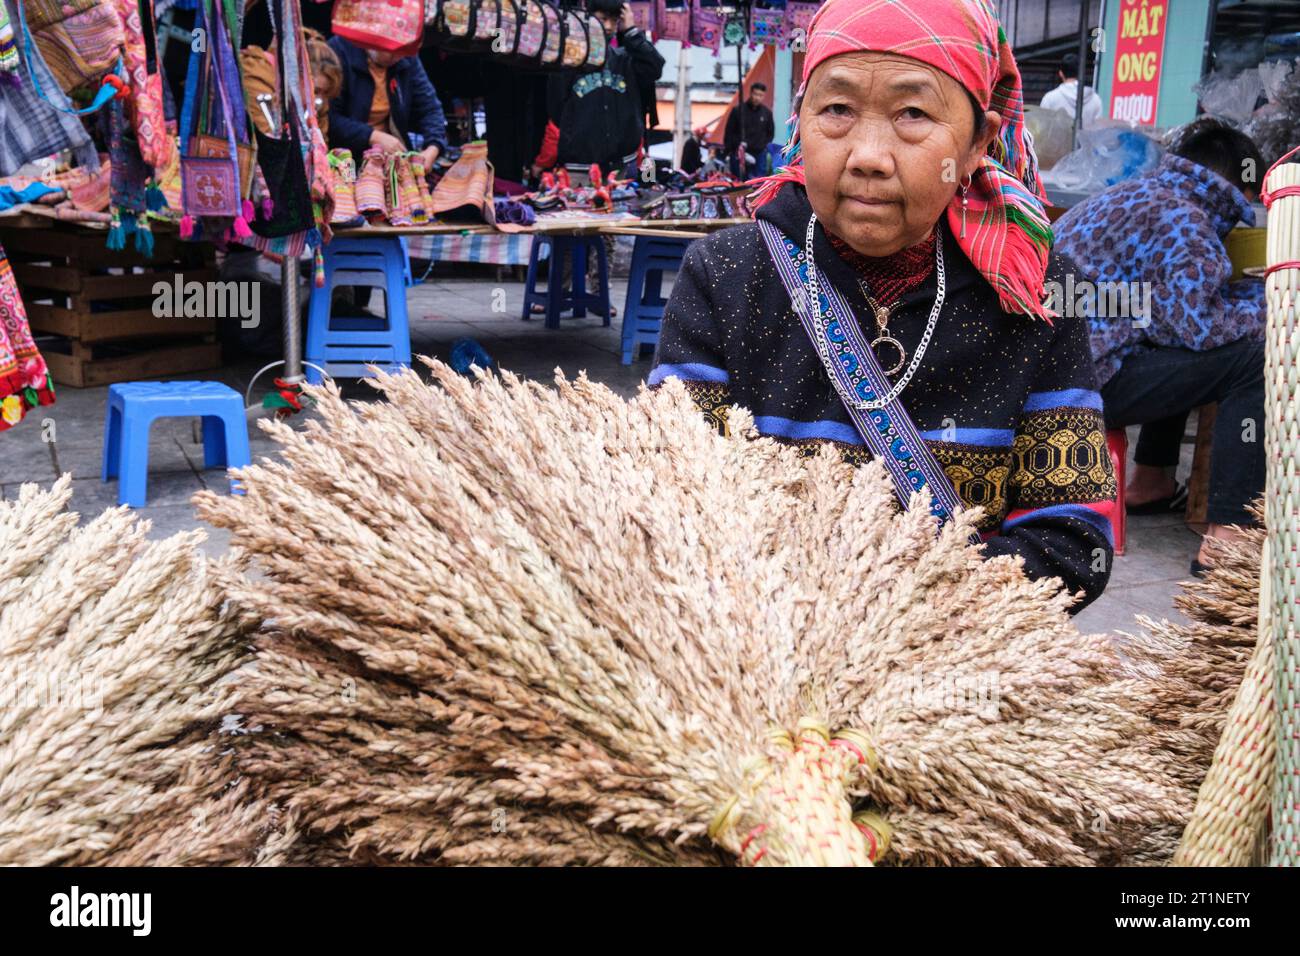 Marché du dimanche bac Ha, Vietnam. Vendeur de balais à riz. Province de Lao Cai. Banque D'Images